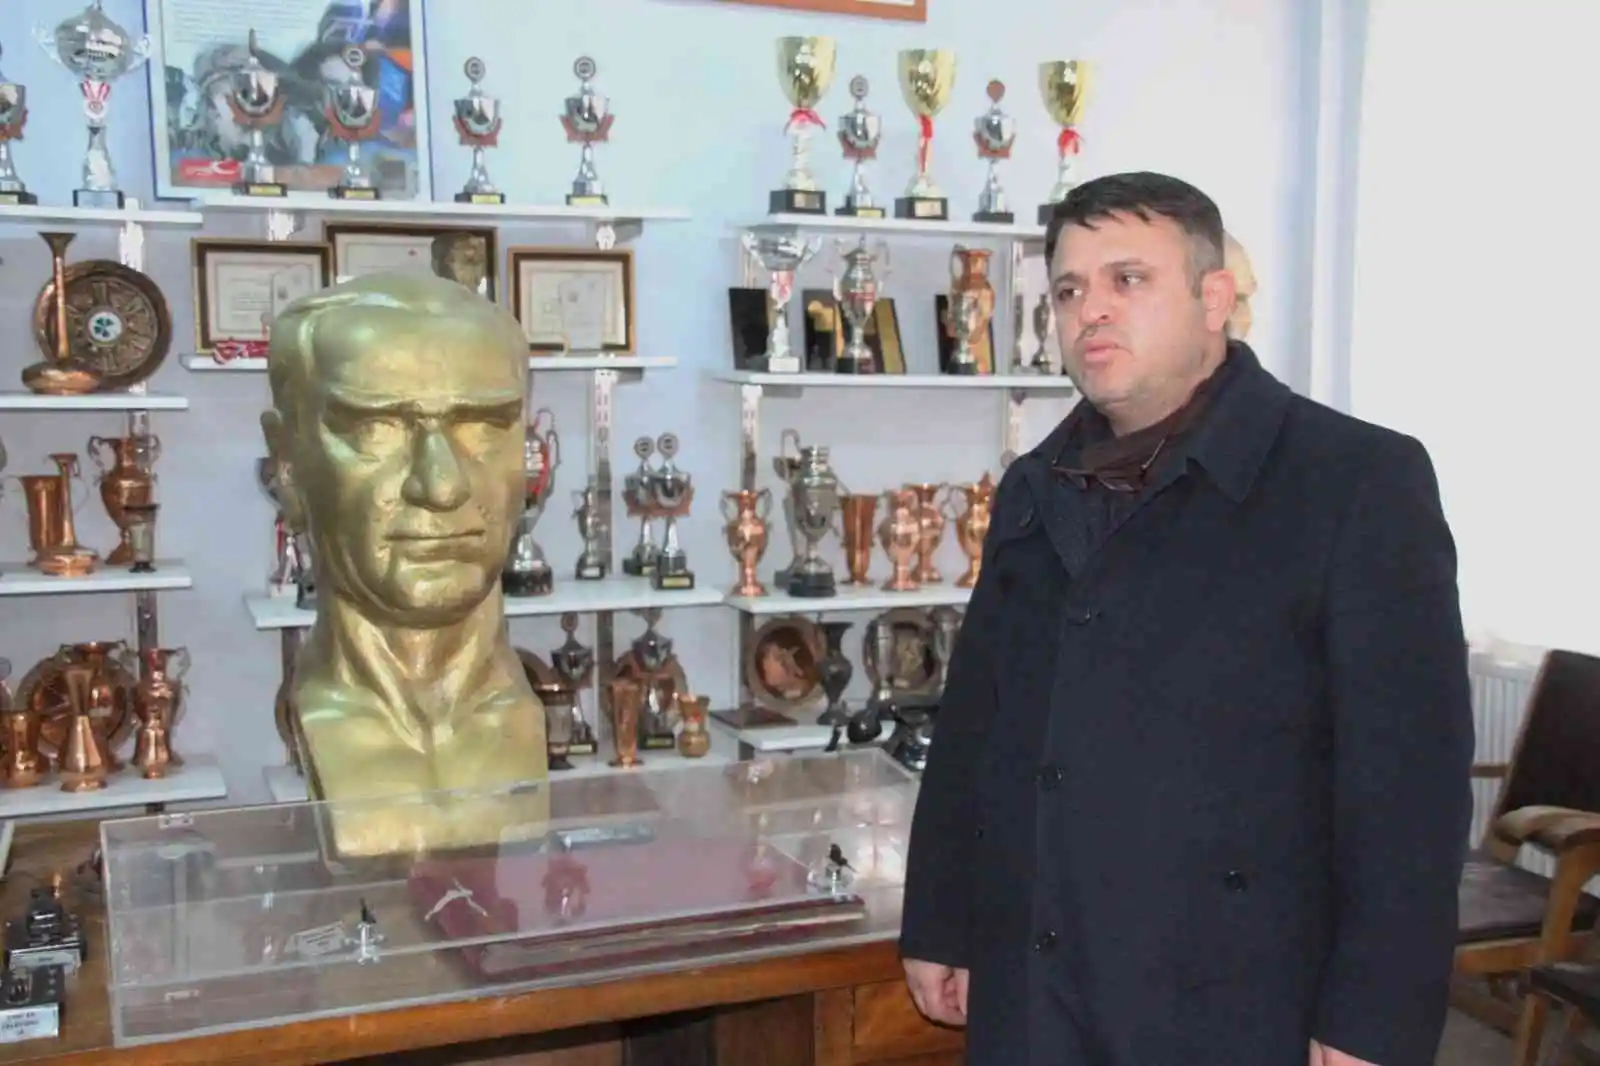 Erzincan Lisesi’nde bulunan müze tarihe ışık tutuyor
